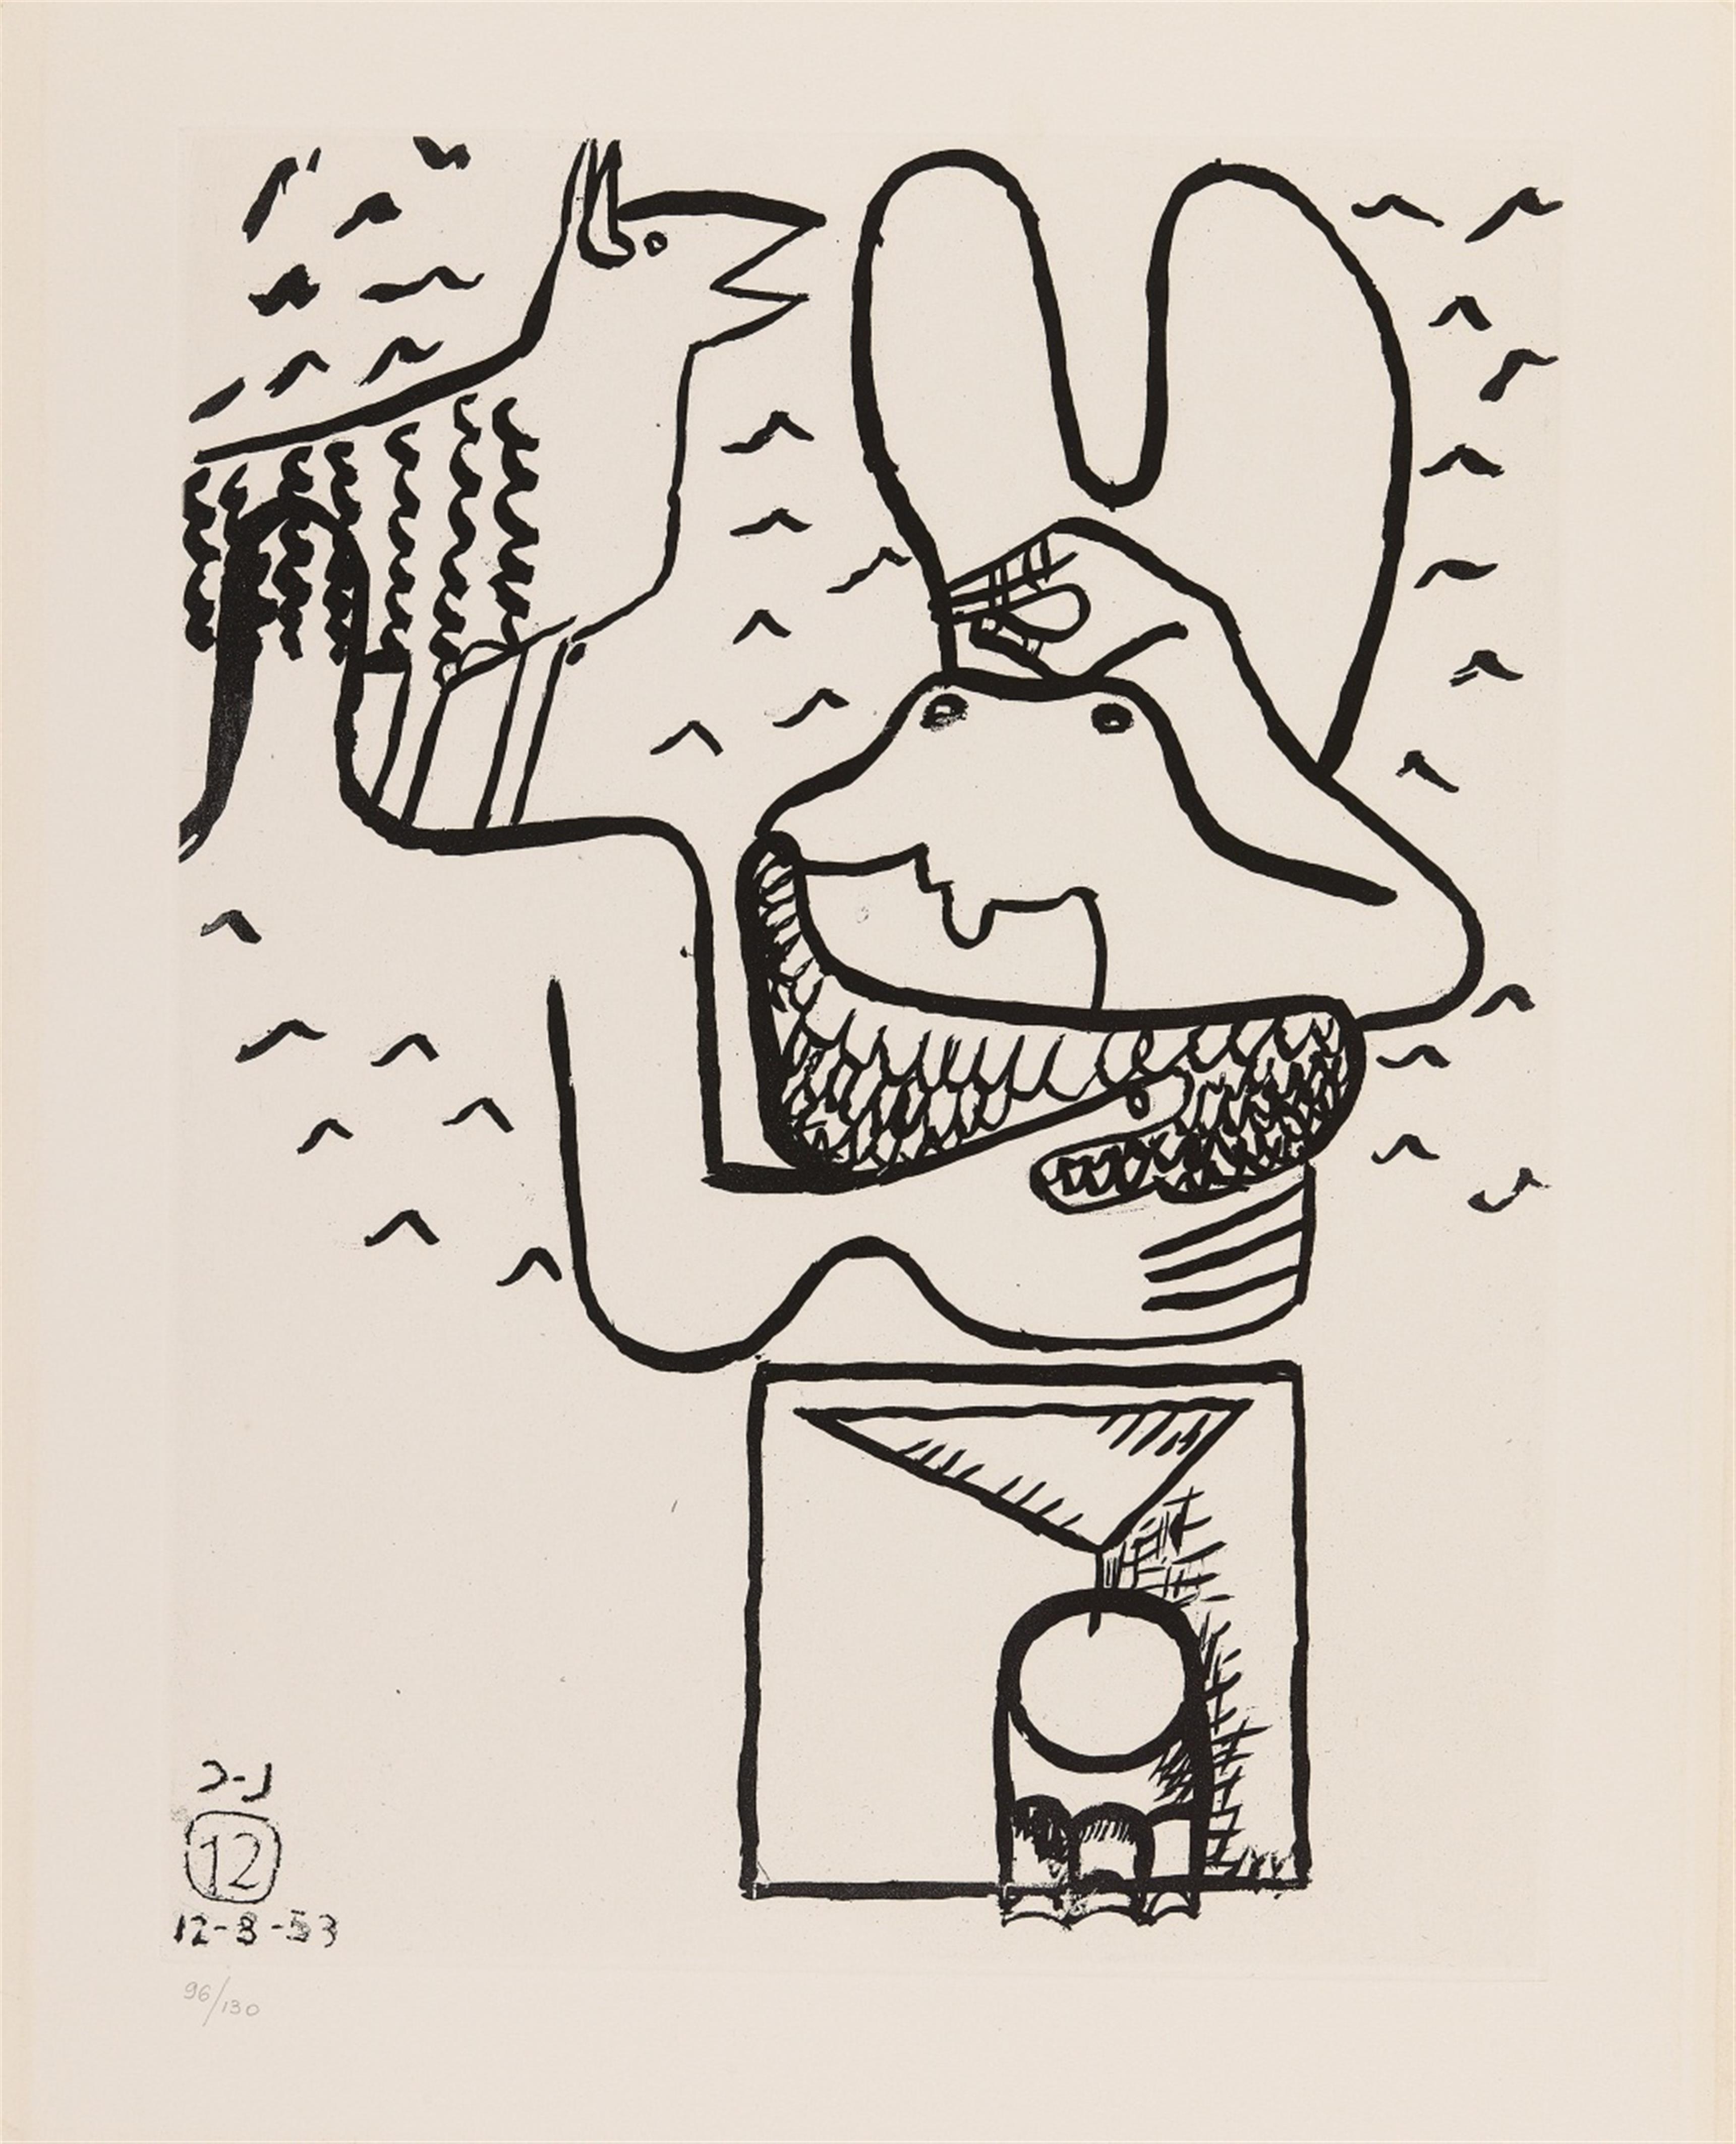 Le Corbusier (Charles-Édouard Jeanneret) - Unité - image-29